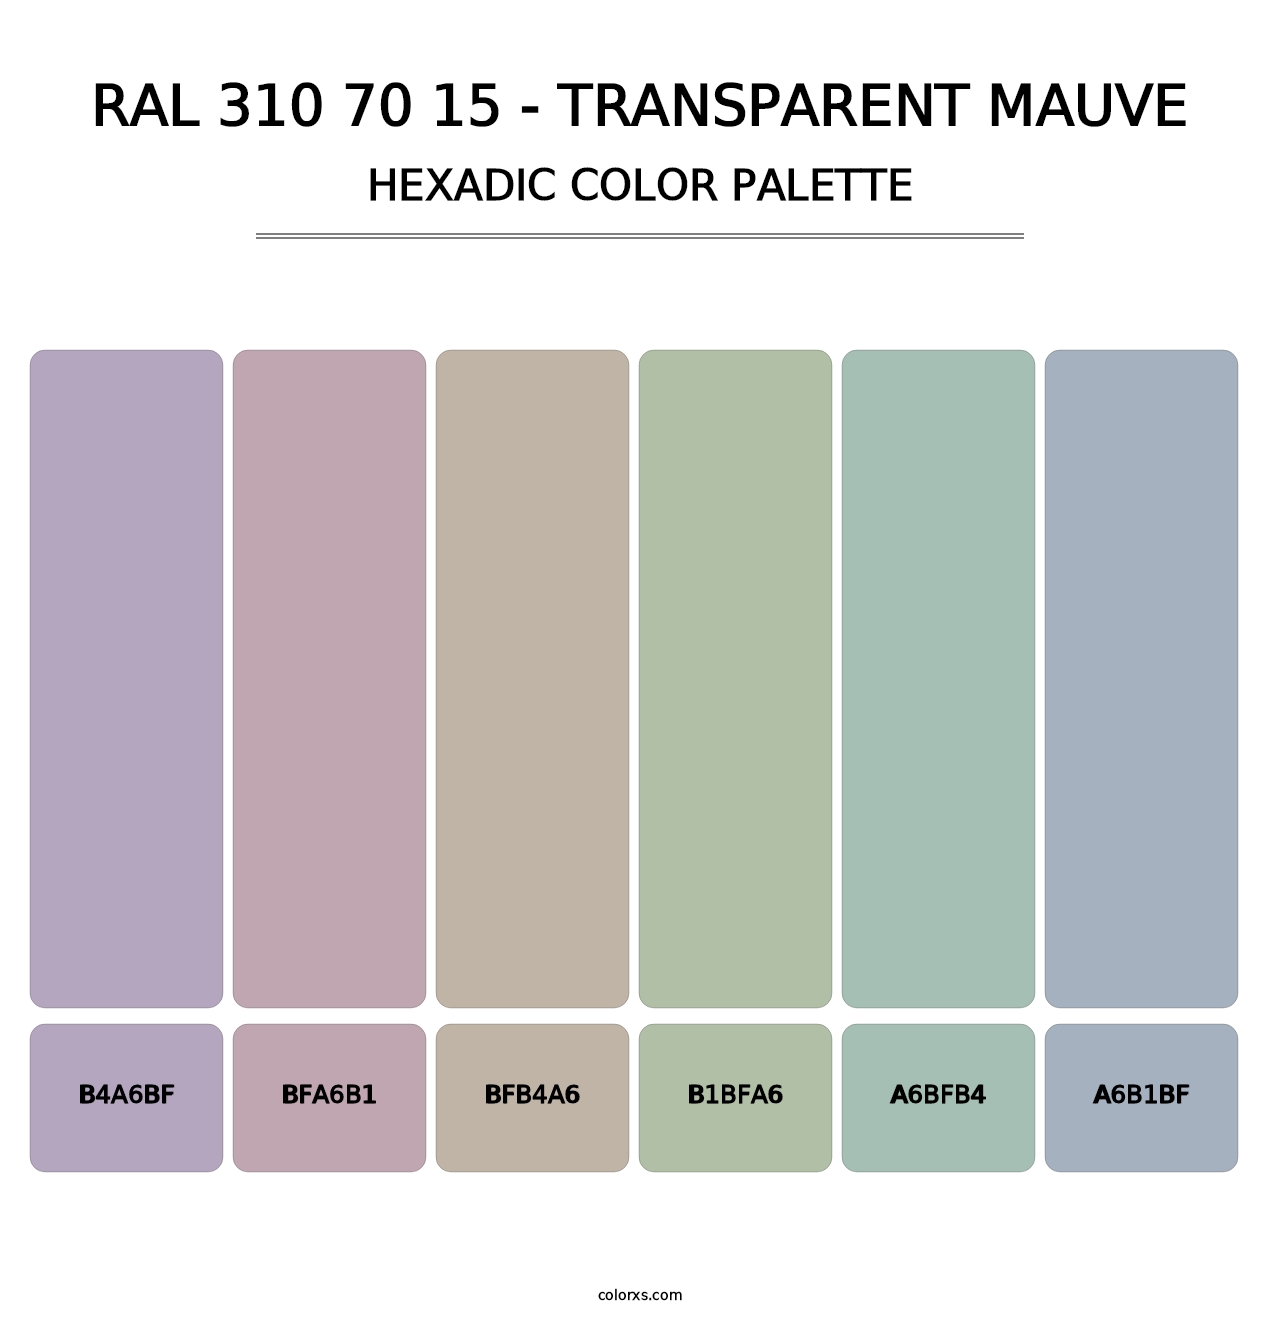 RAL 310 70 15 - Transparent Mauve - Hexadic Color Palette